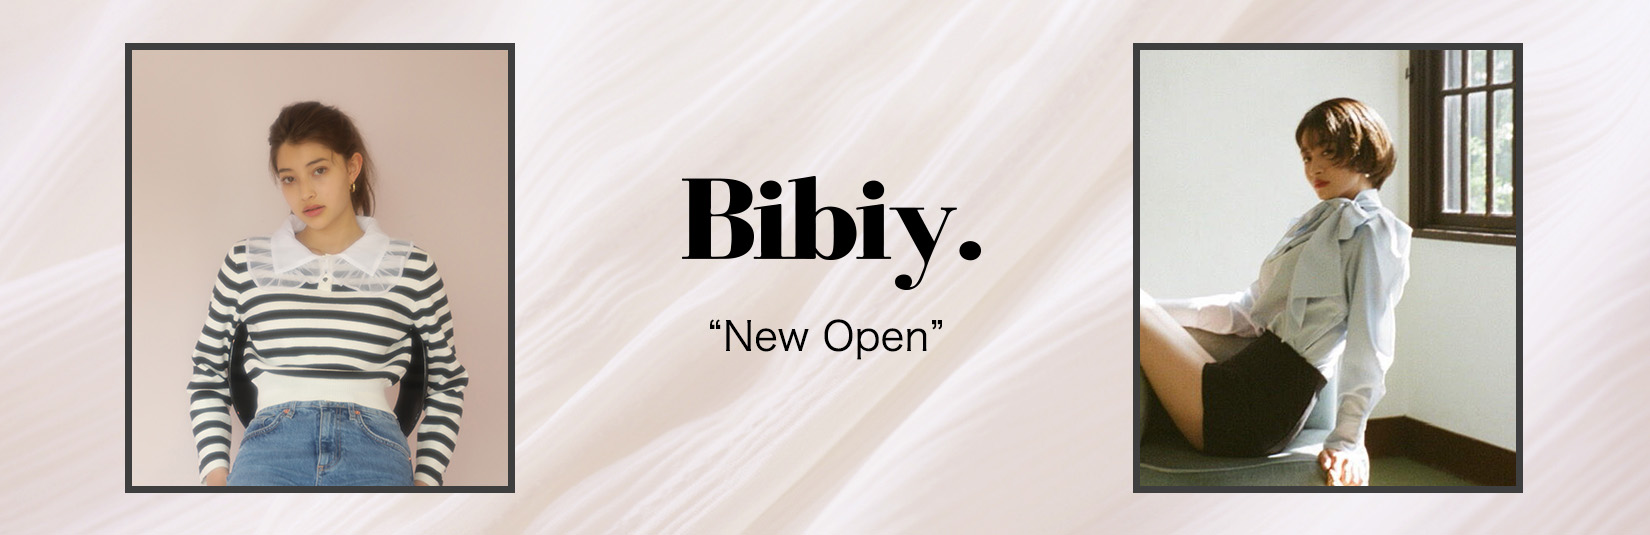 bibiy. -New Open-